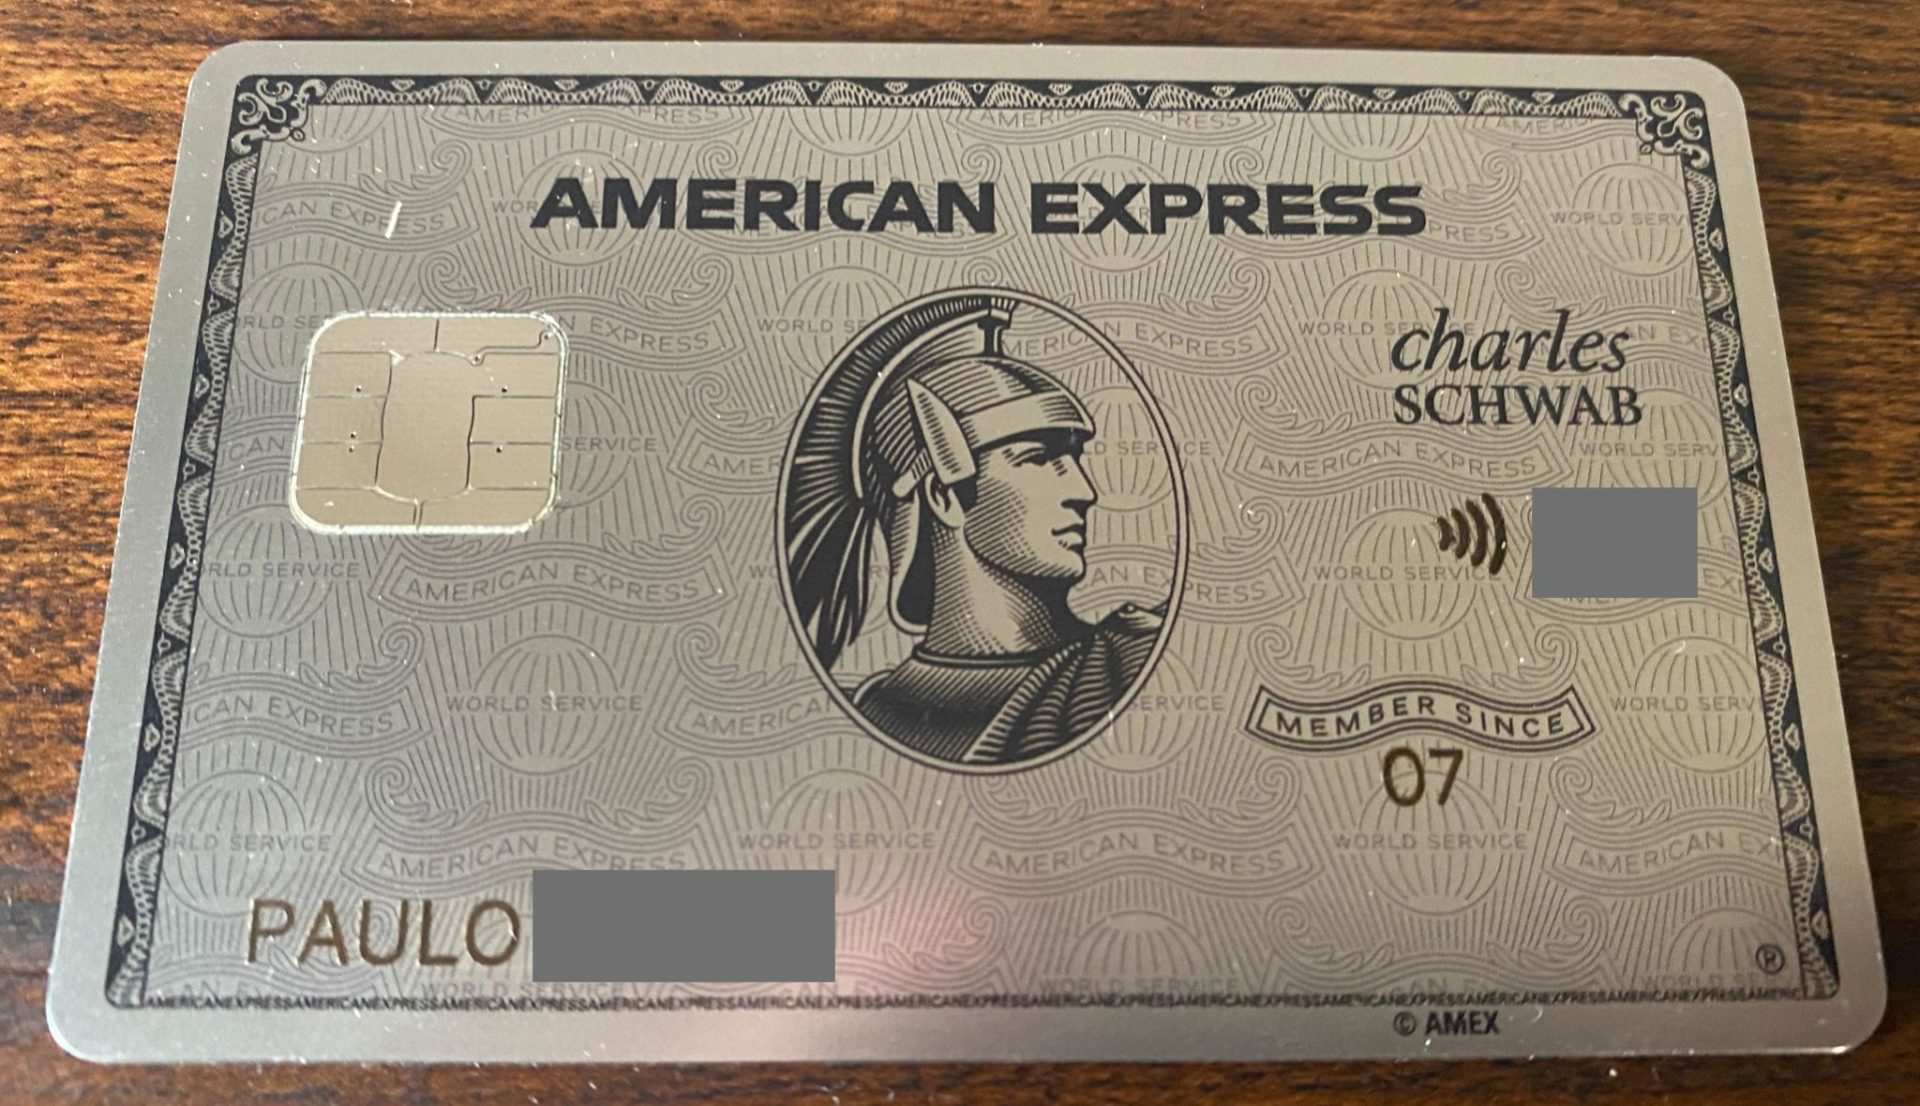 Conheça o cartão American Express Platinum do banco americano Charles